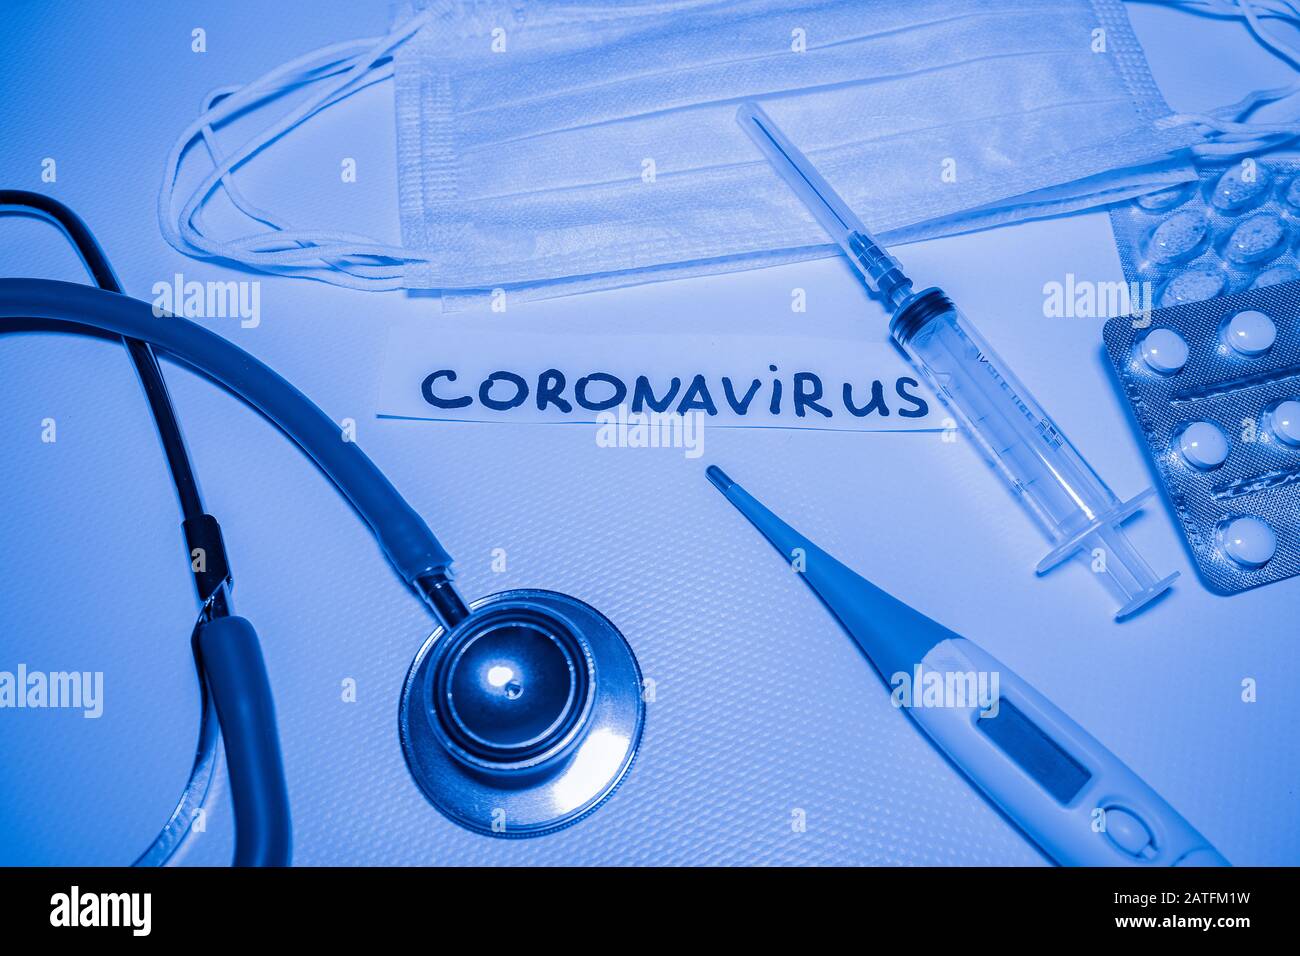 Fondo médico azul con inscripción coronavirus, estetoscopio, píldoras, termómetro, jeringa Foto de stock